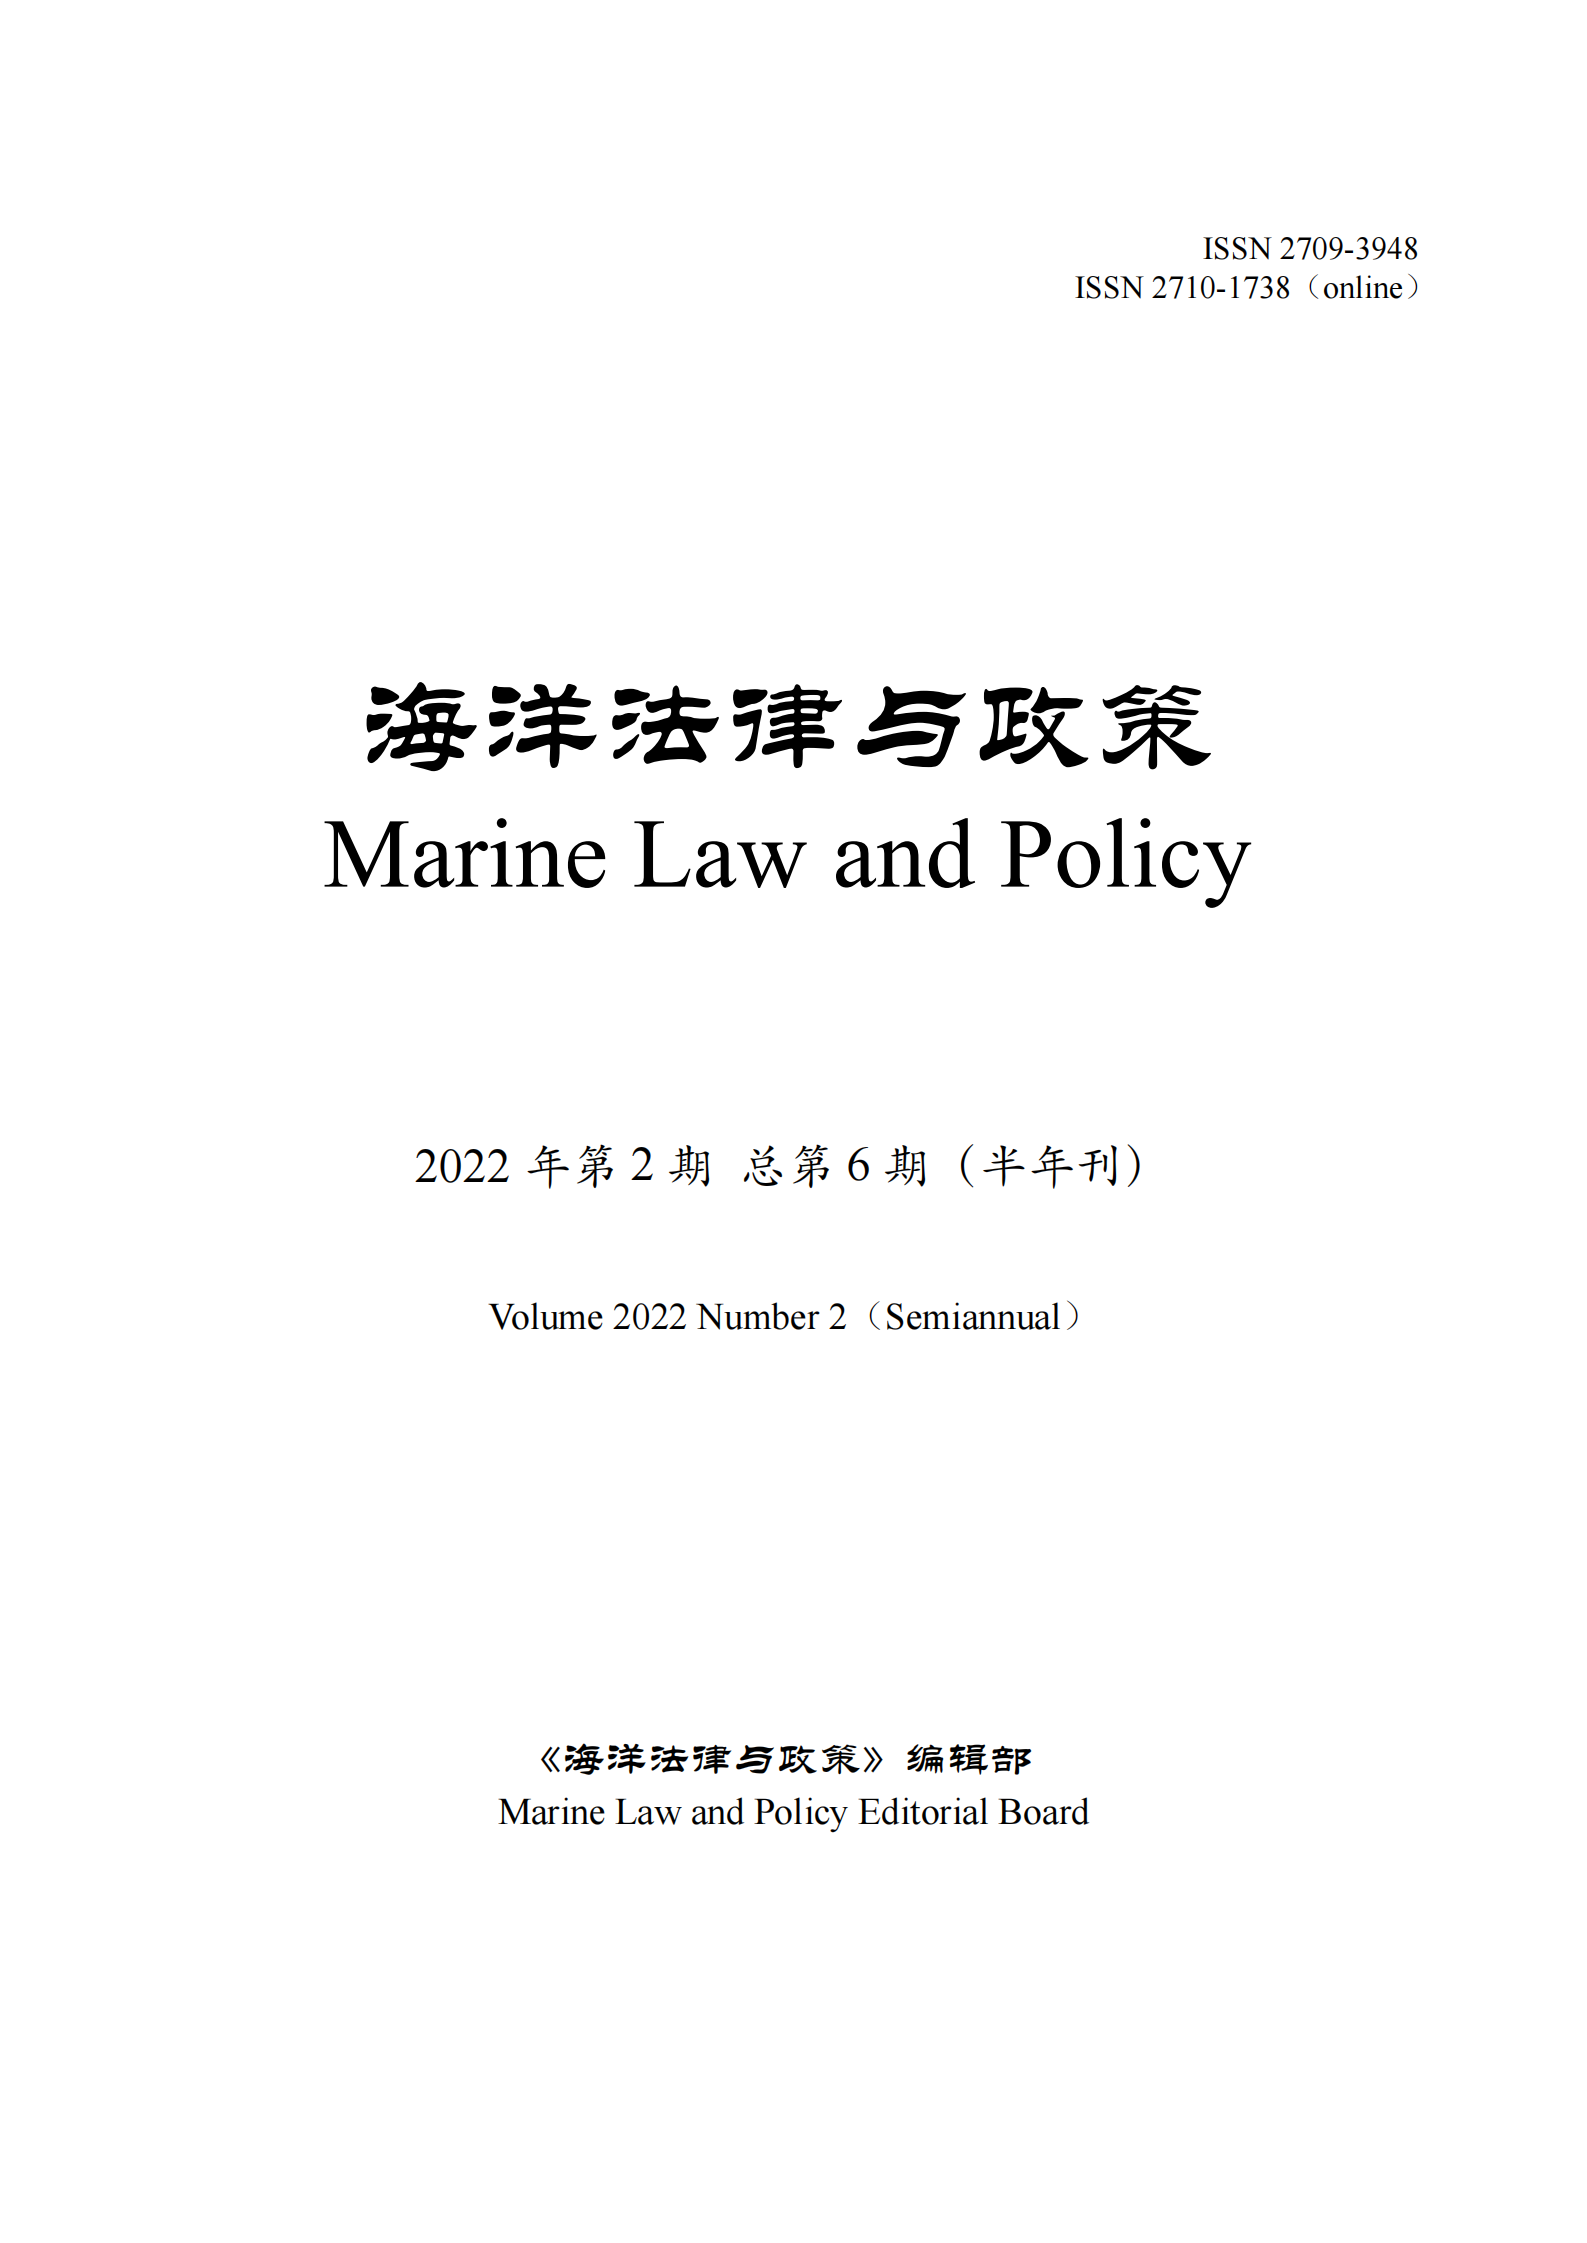 提取自《海洋法律与政策》总第6期.png